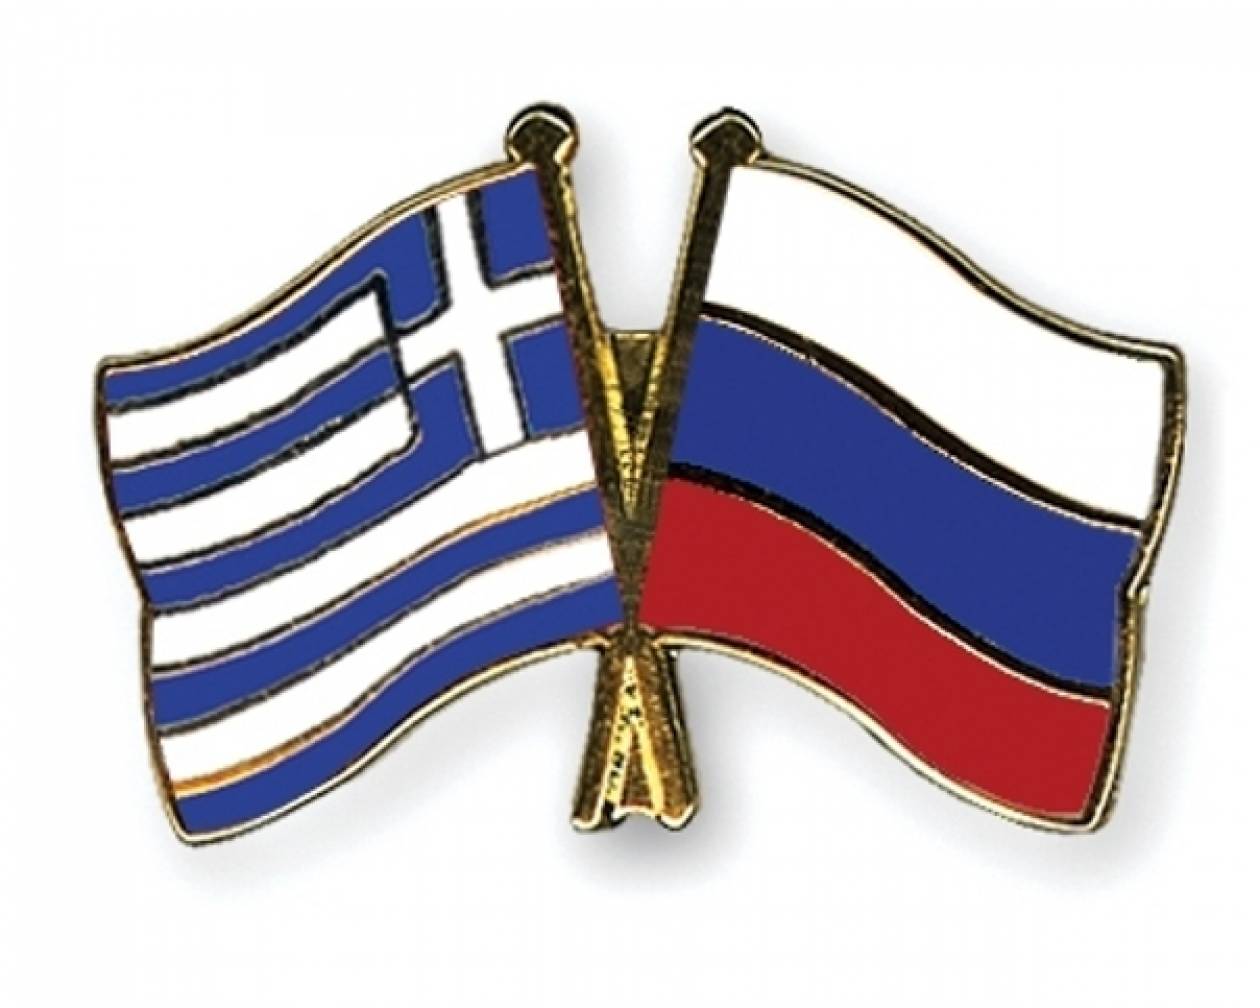 Προς αναθέρμανση οι σχέσεις Ελλάδας - Ρωσίας;